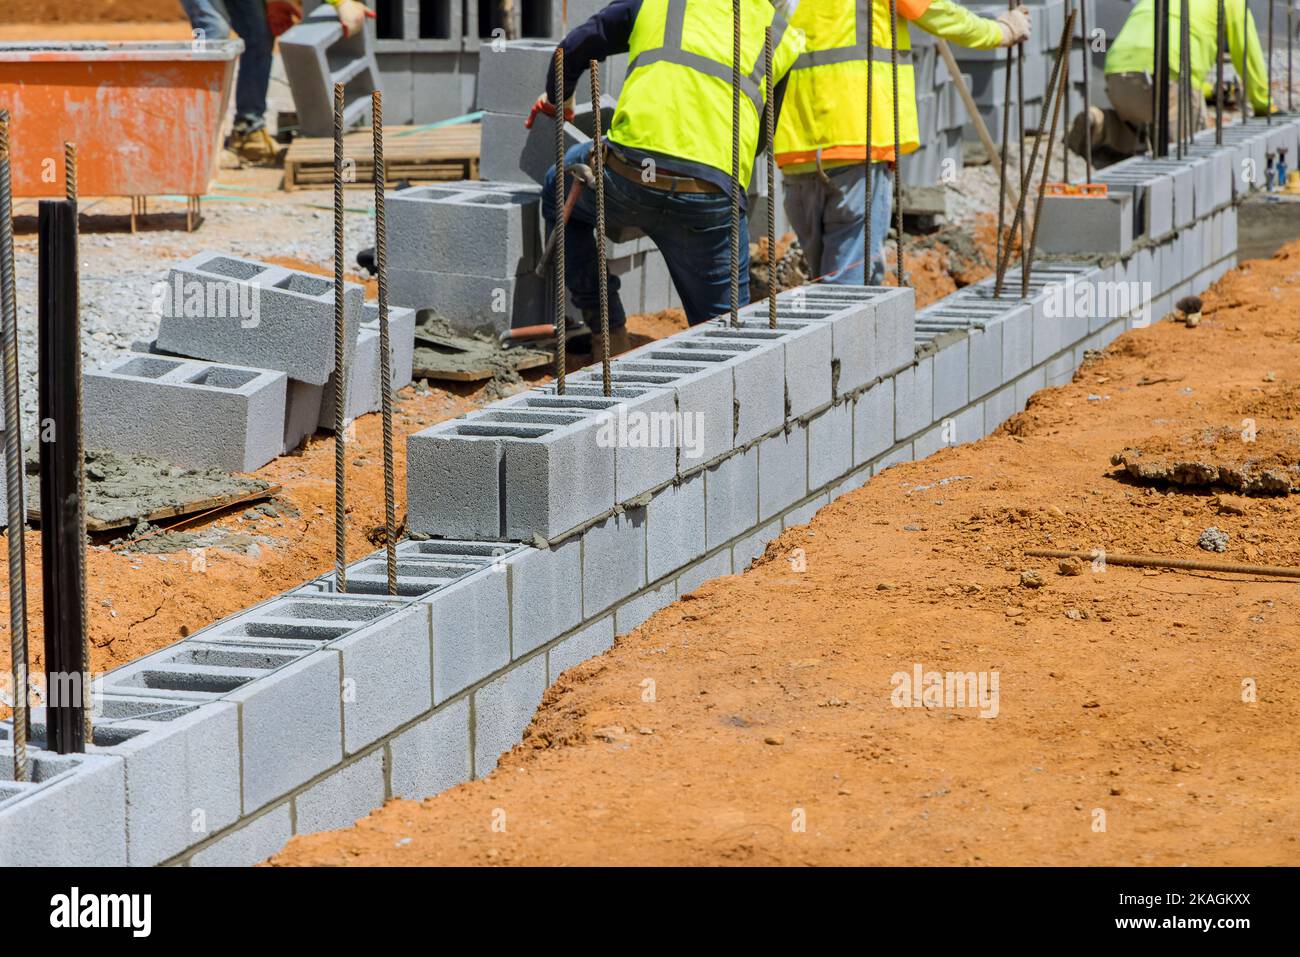 Un employé mason bricklayer entreprise posant le montage de blocs de béton de mur qui est partie de projet de construction Banque D'Images